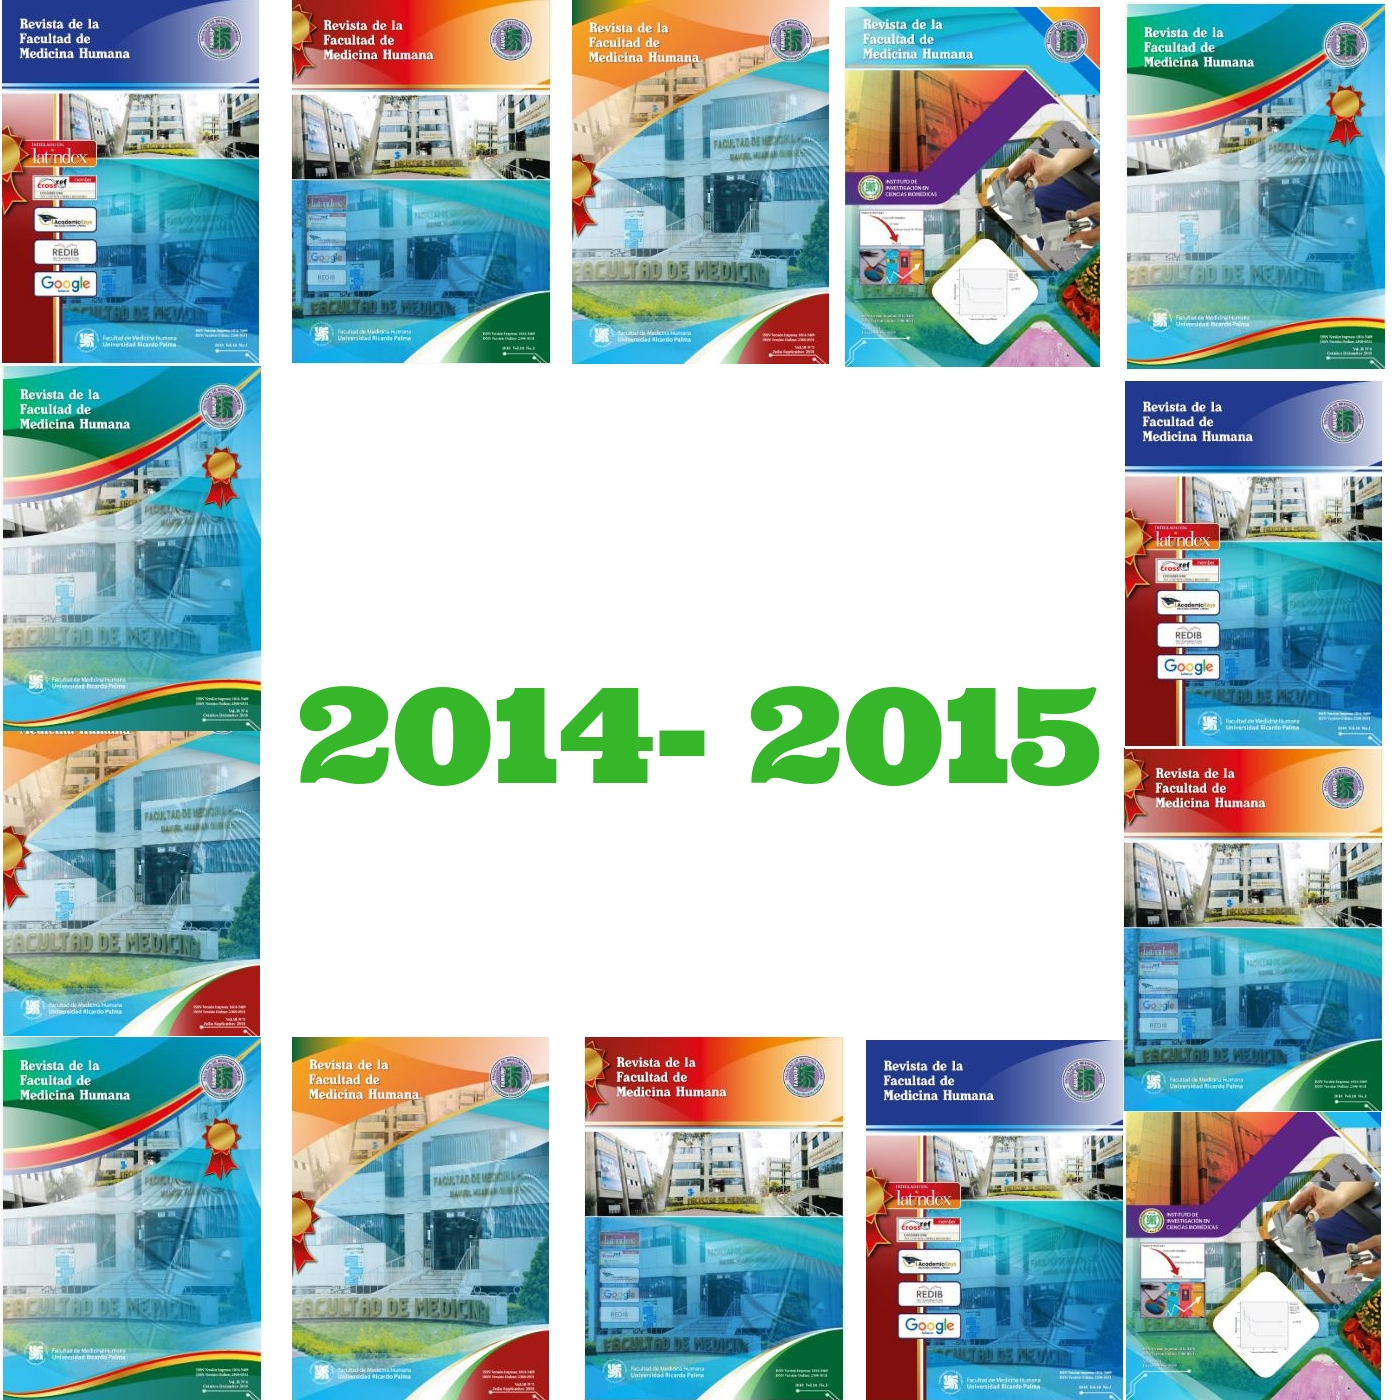 					View Vol. 15 No. 1 (2015): Revista de la Facultad de Medicina Humana
				